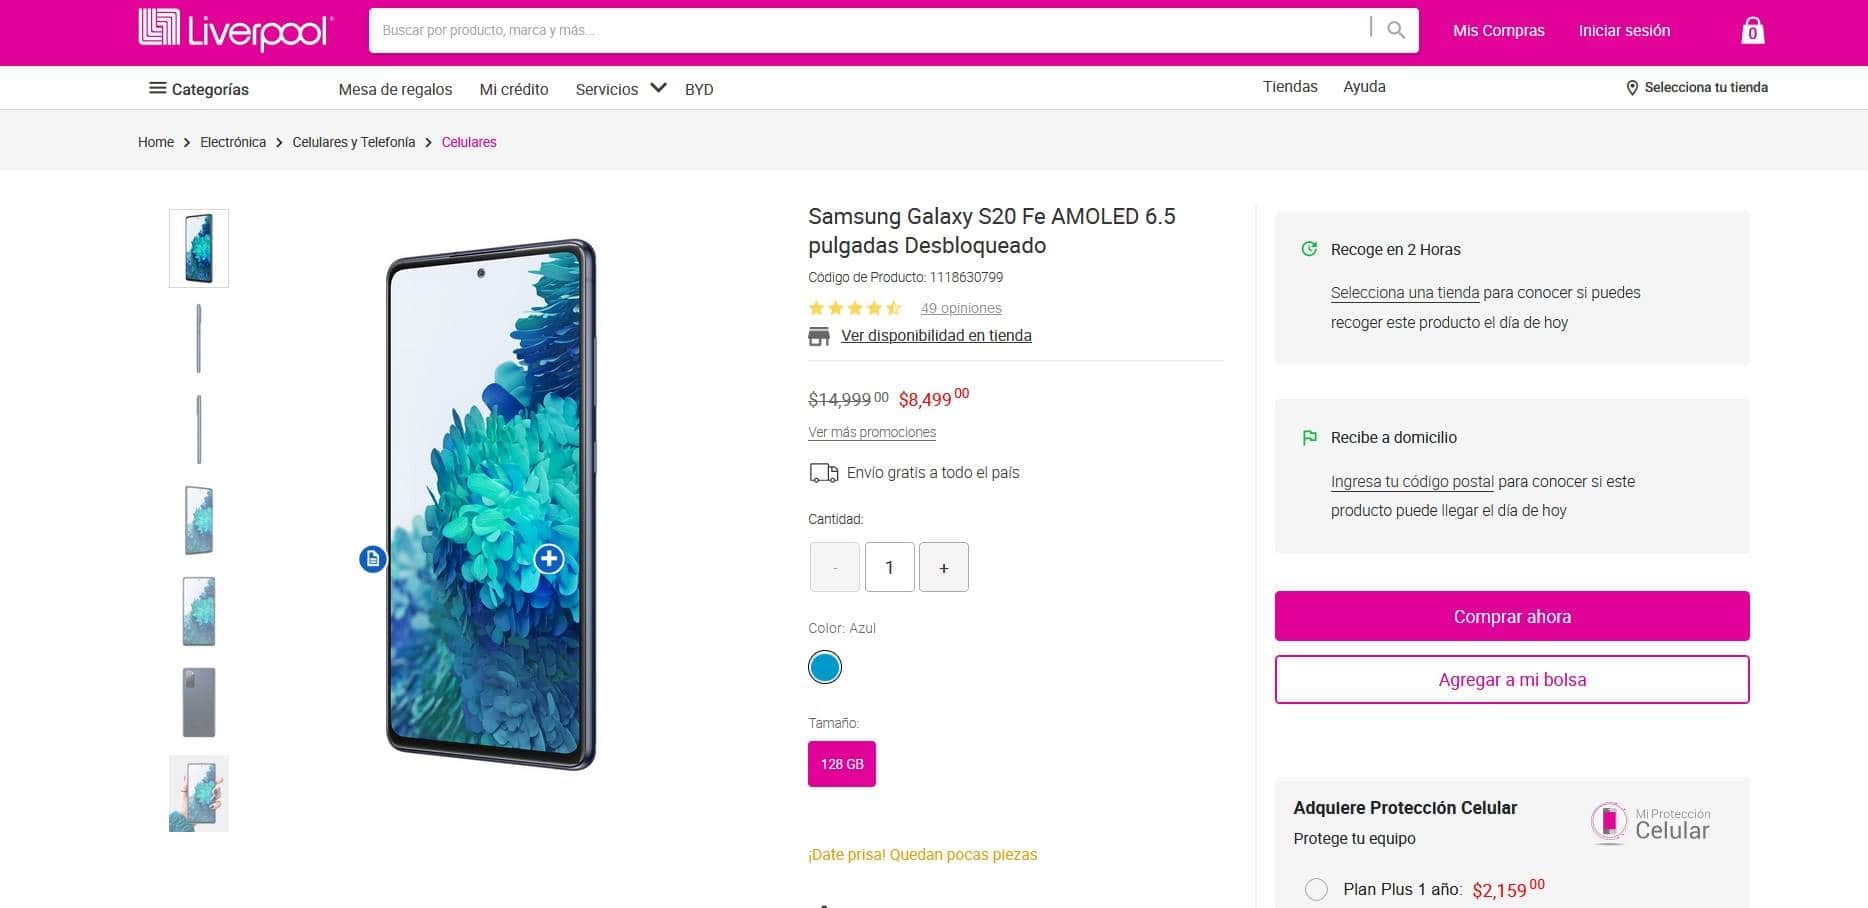 Smartphone Samsung Galaxy S20 Fe en descuento